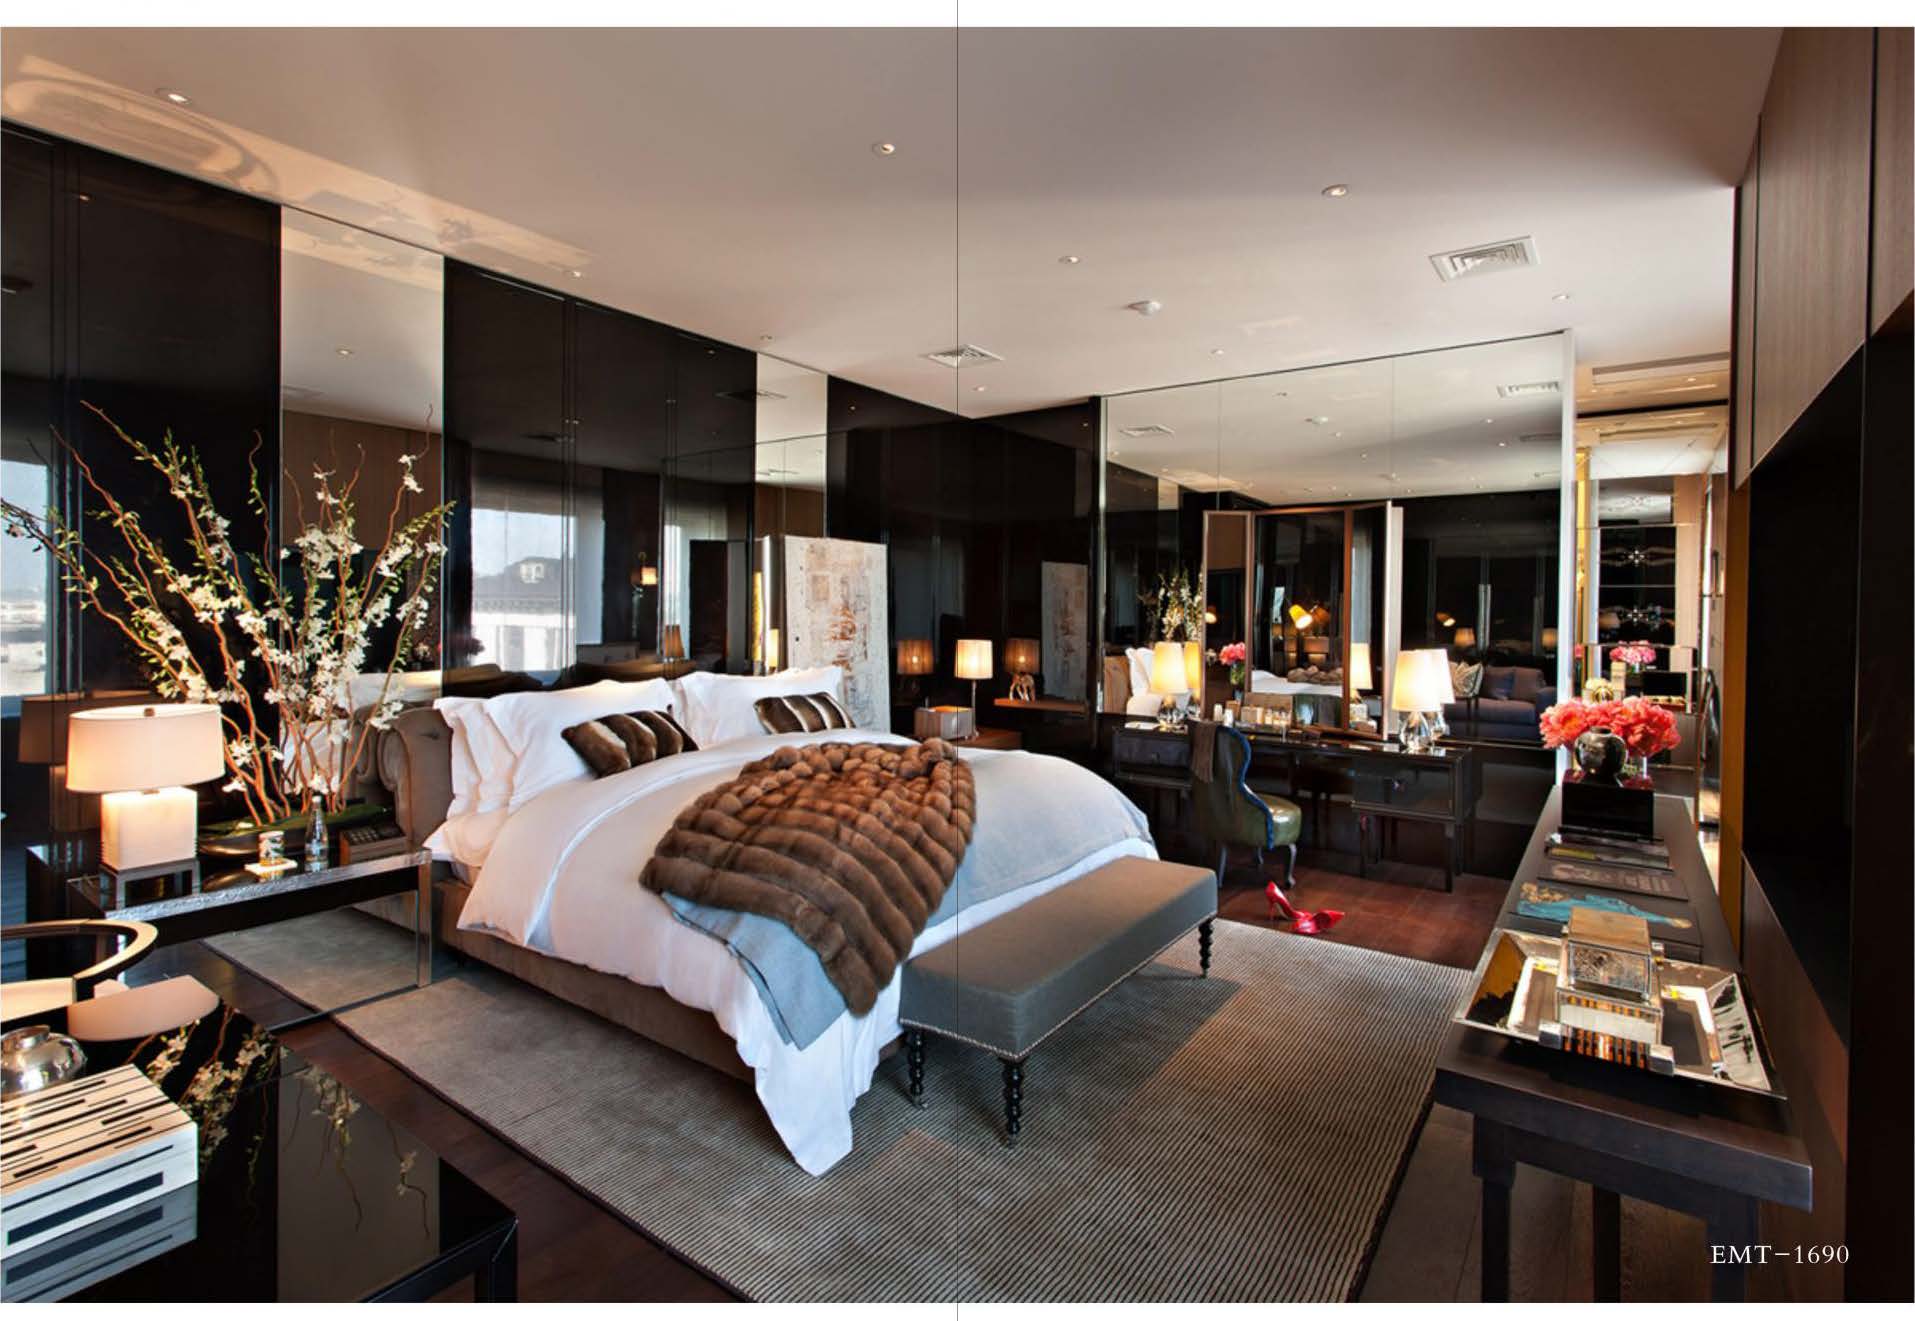 Superb Bedroom Luxury Furniture